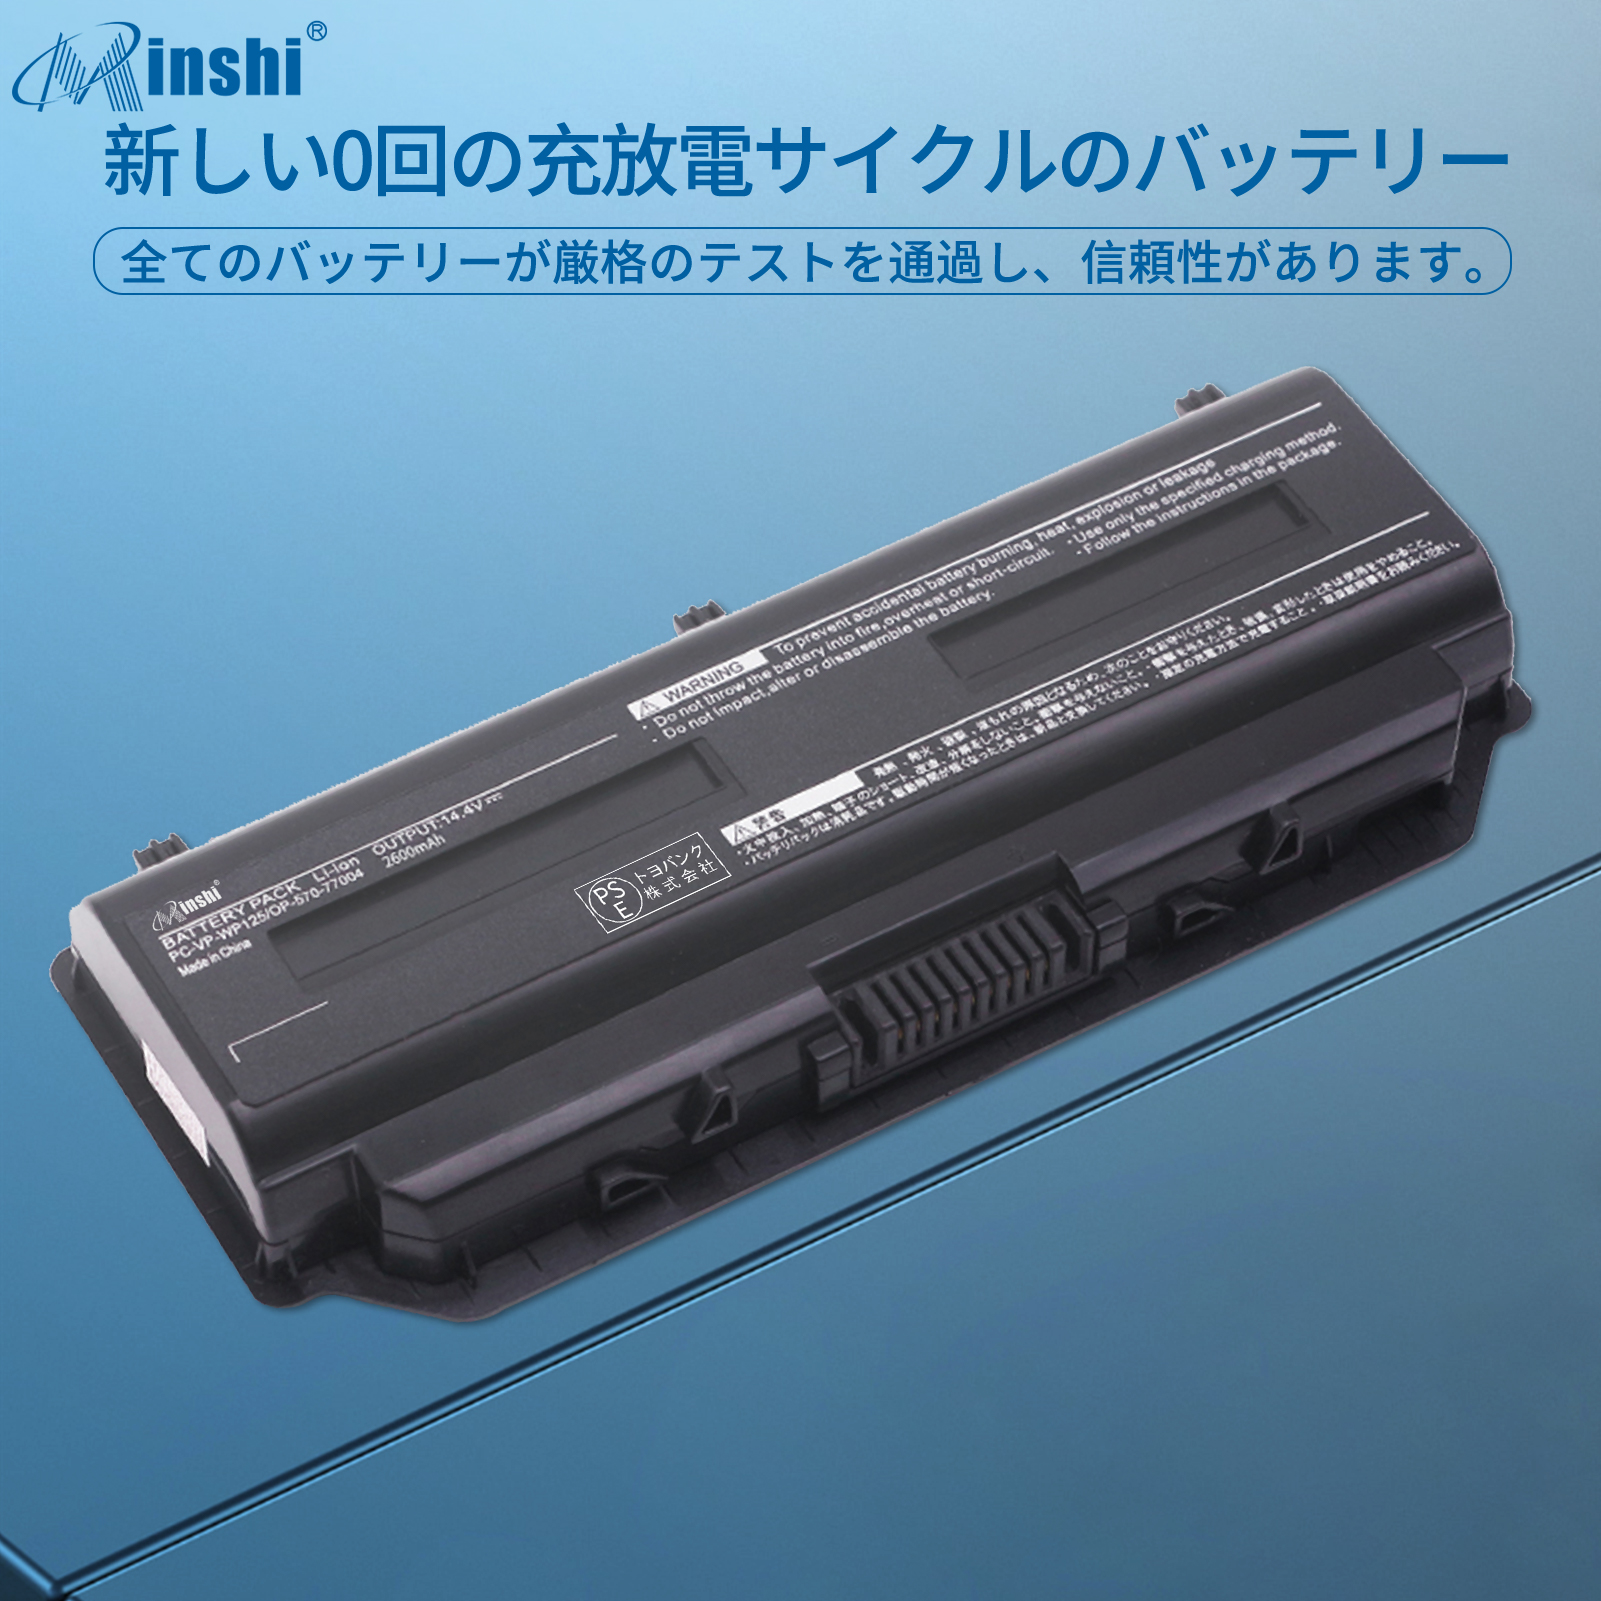  minshi NEC PC-LL750SSB PC-VP-WP125 対応 互換バッテリー 2600mAh  高品質交換用バッテリー